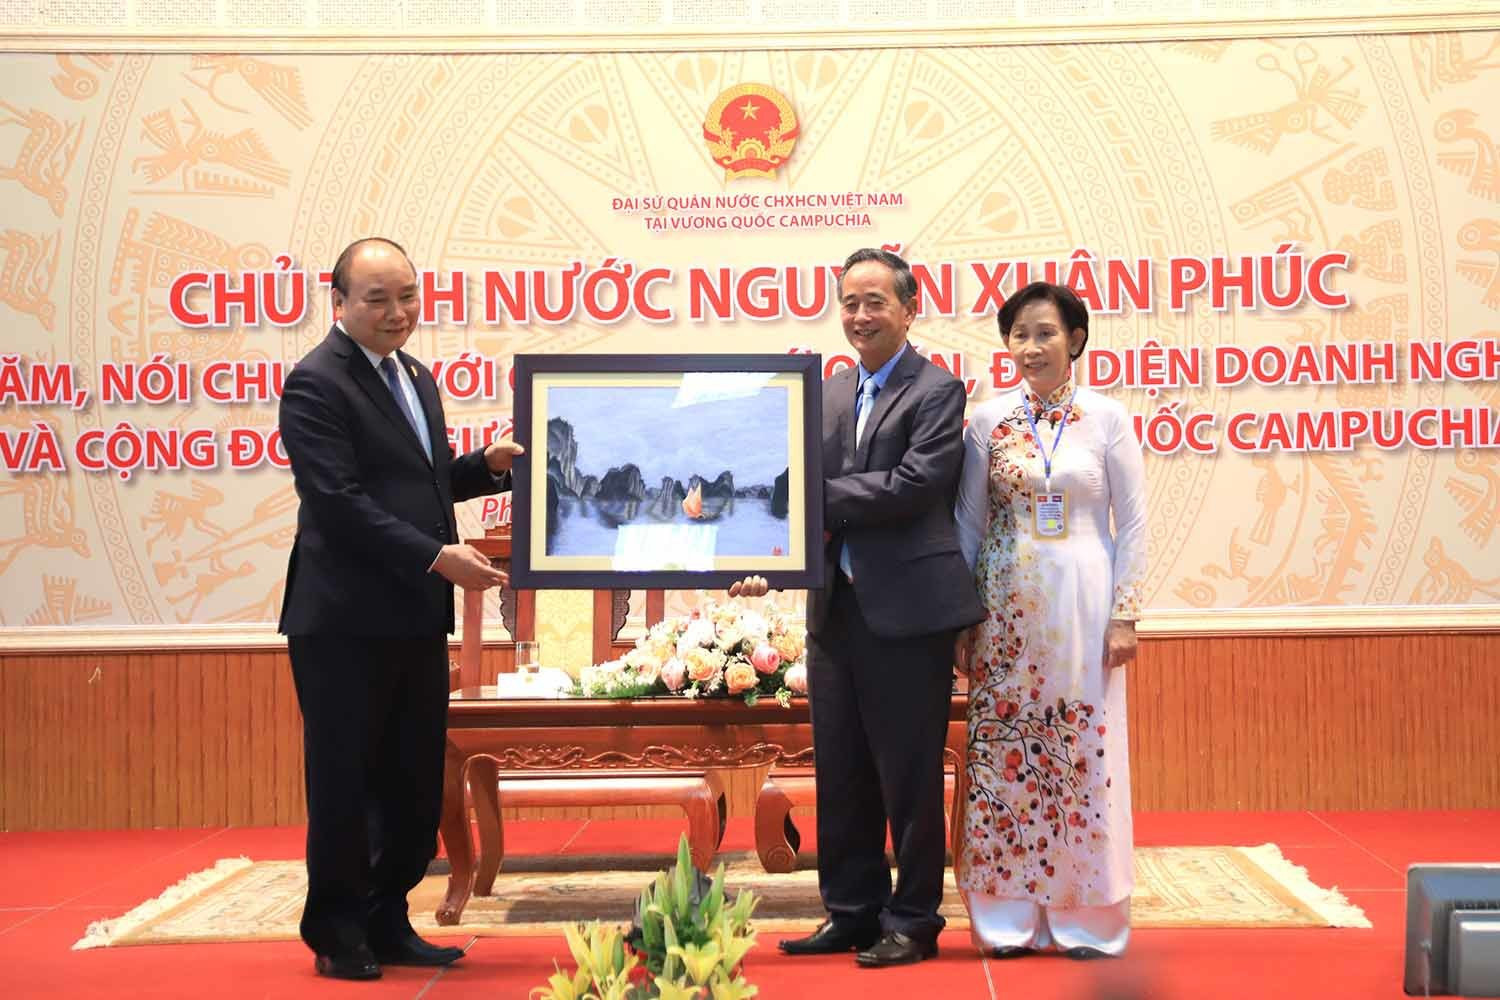 Chủ tịch nước: Vun đắp mối quan hệ Việt Nam-Campuchia mãi mãi xanh tươi